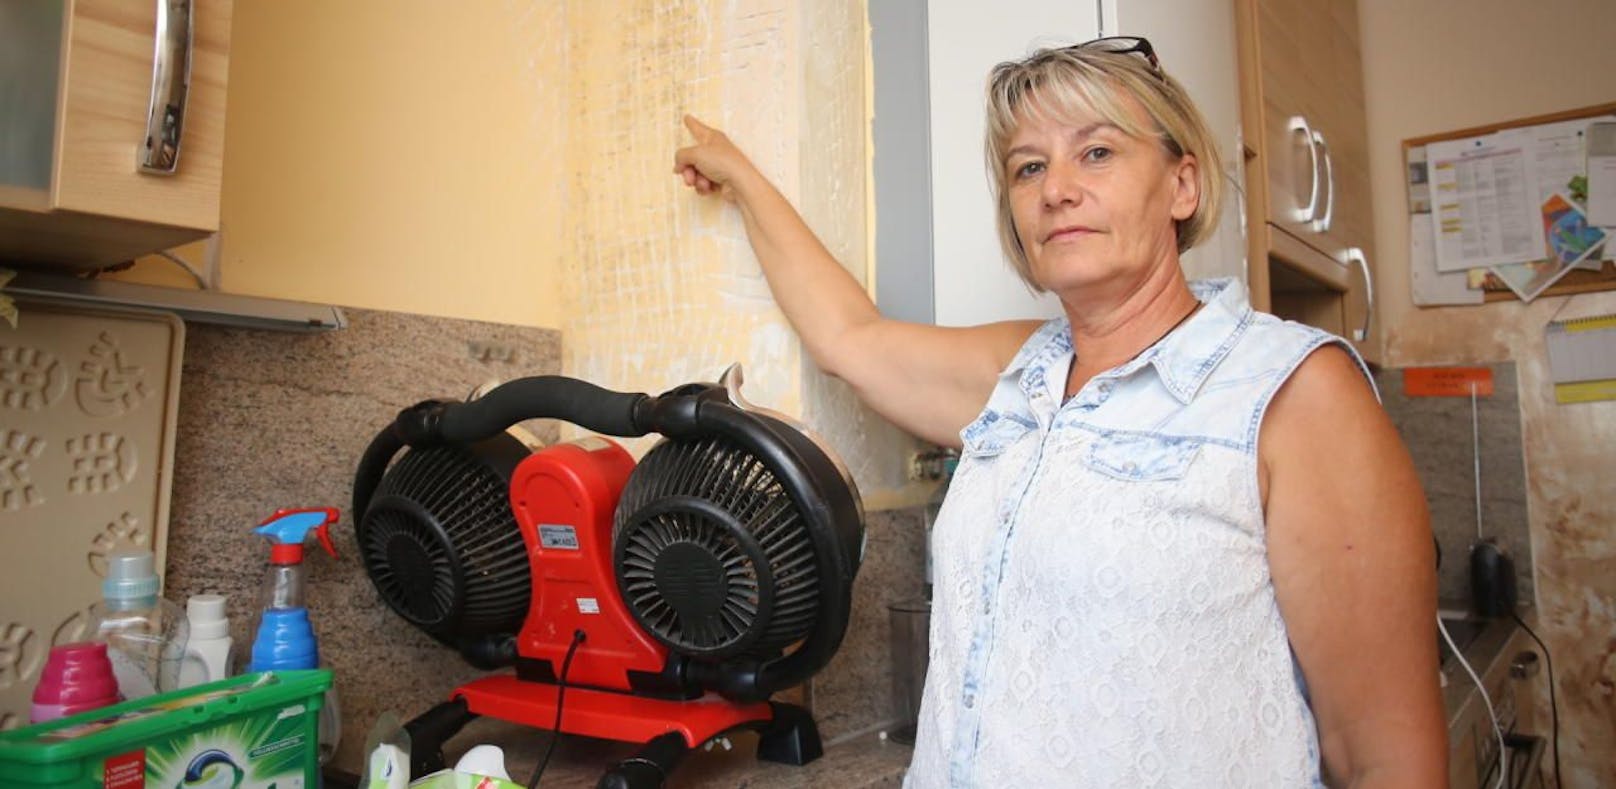 Wasser in Wohnung: Frau hofft seit 1 Monat auf Hilfe